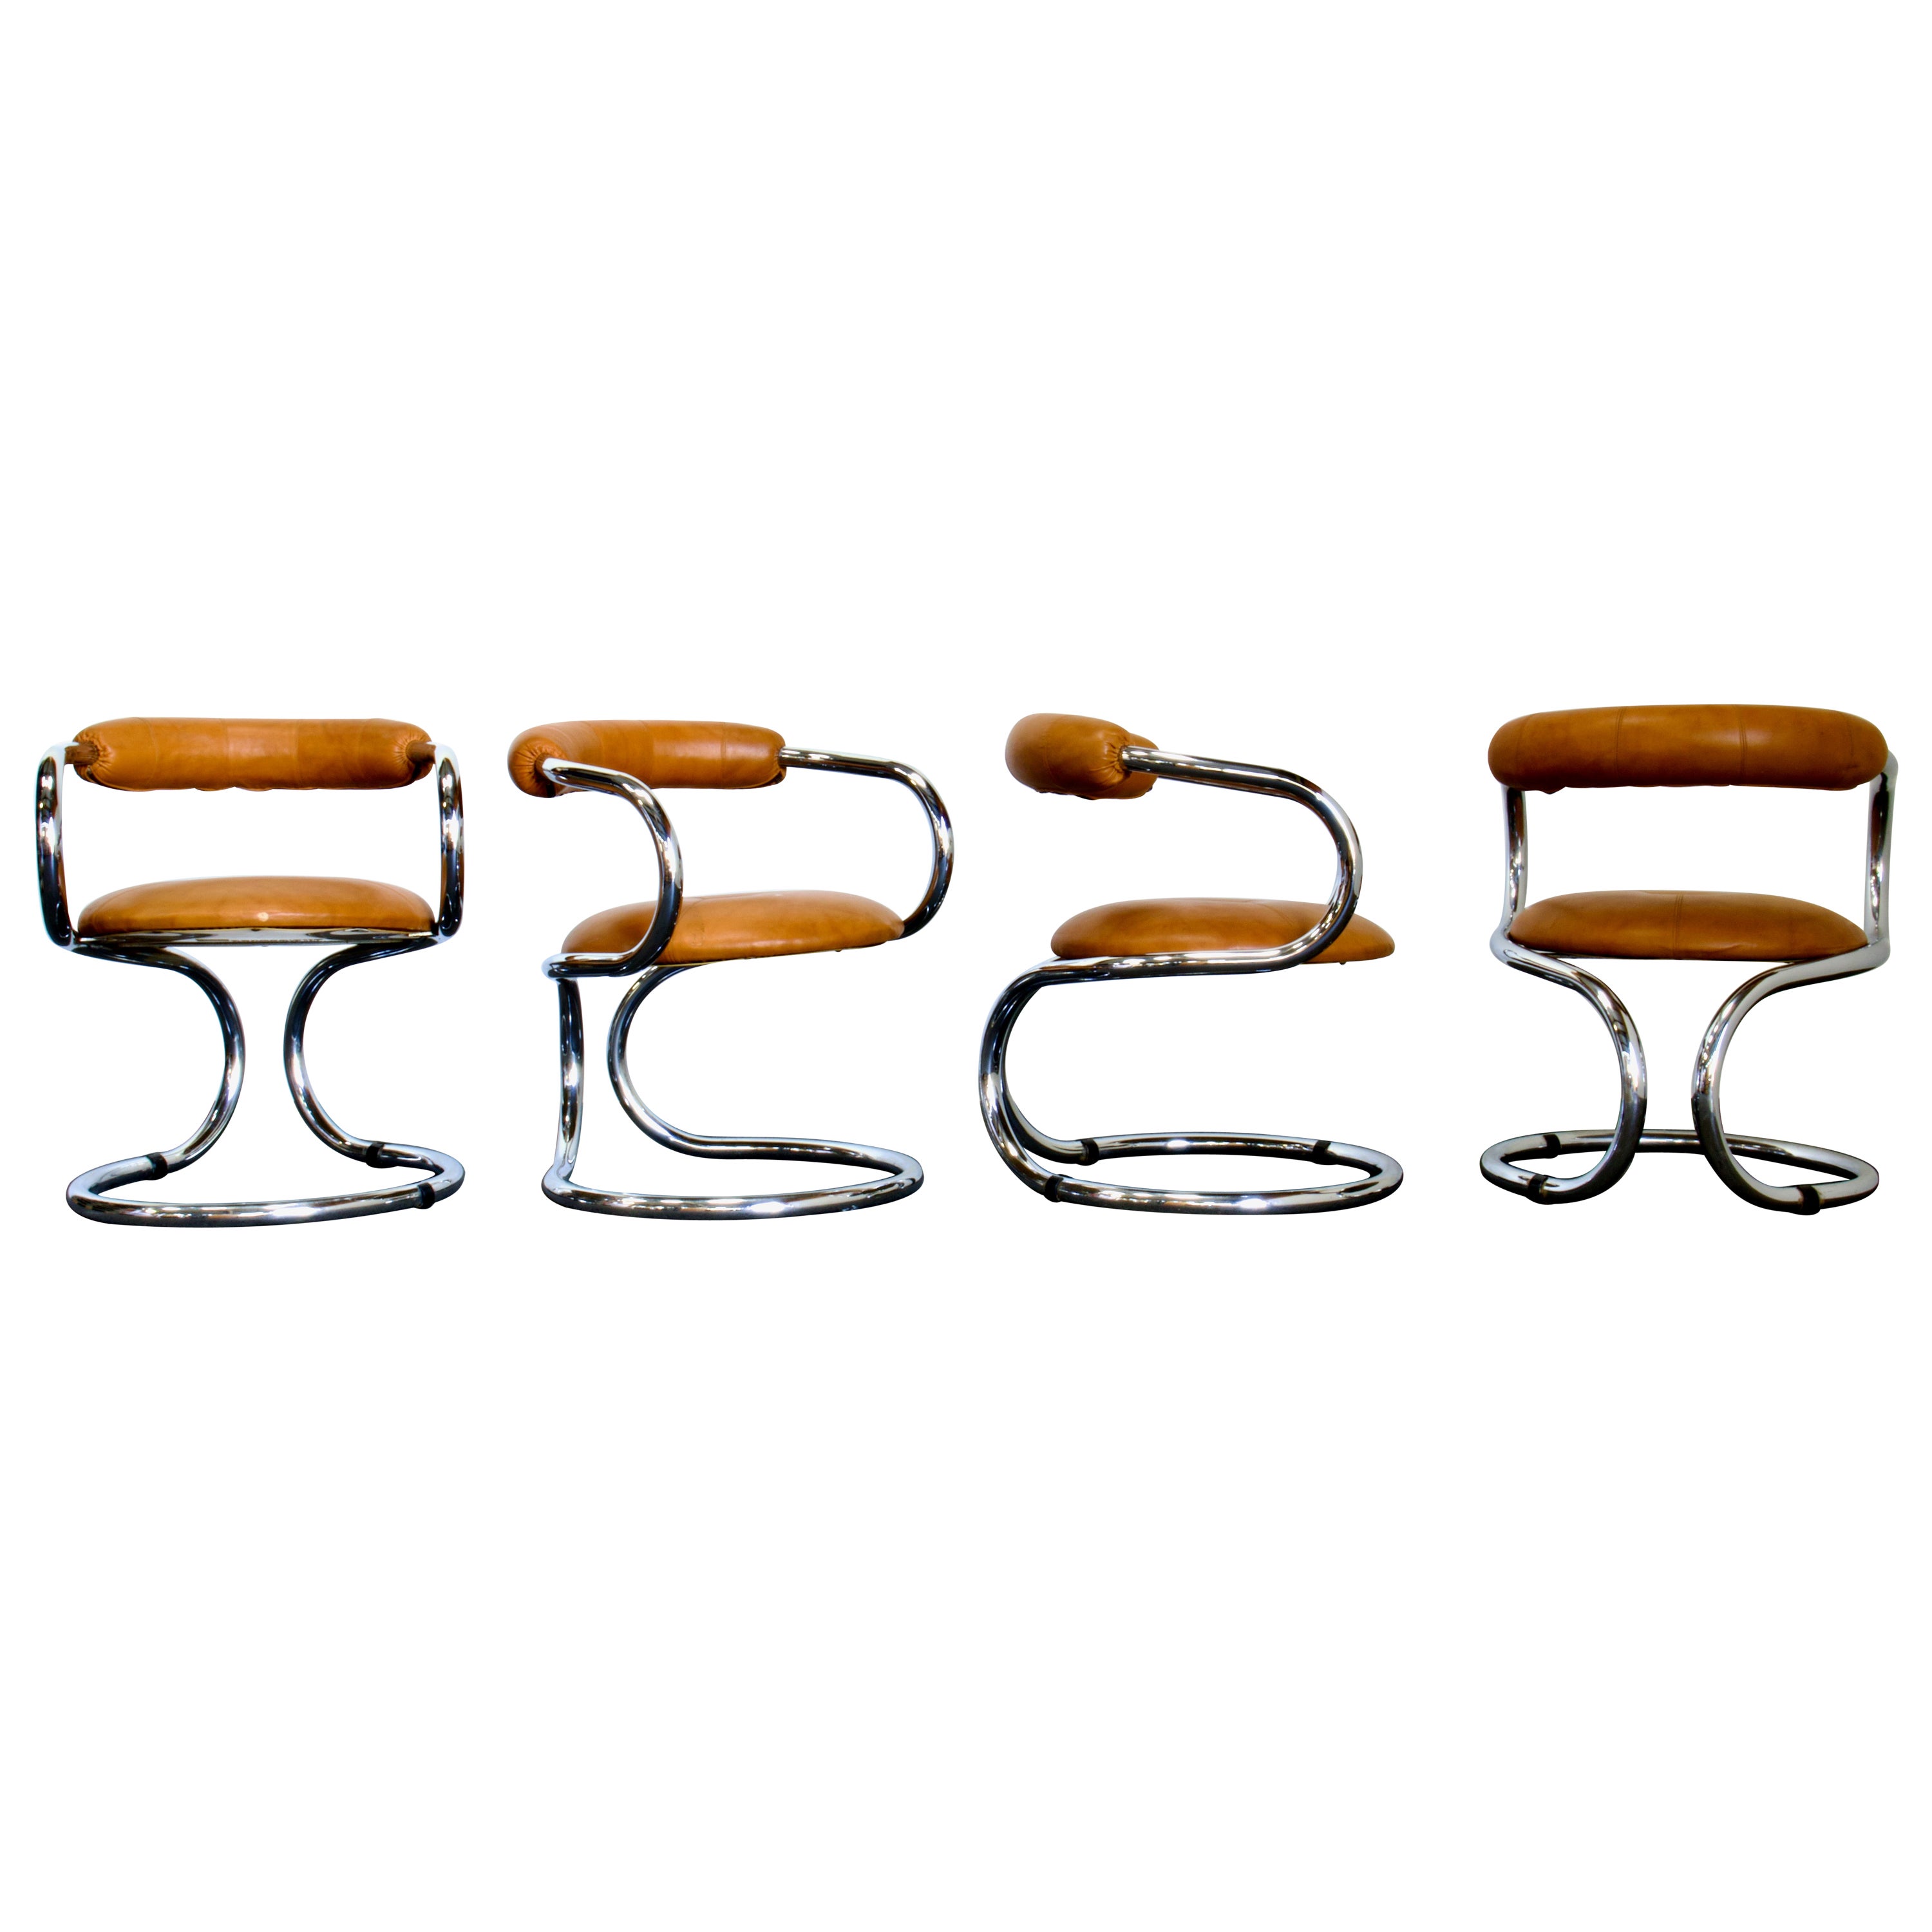 4 "Tubolare" Chrome Chairs by Rudi Bonzanini for Tecnosalotto, Italy